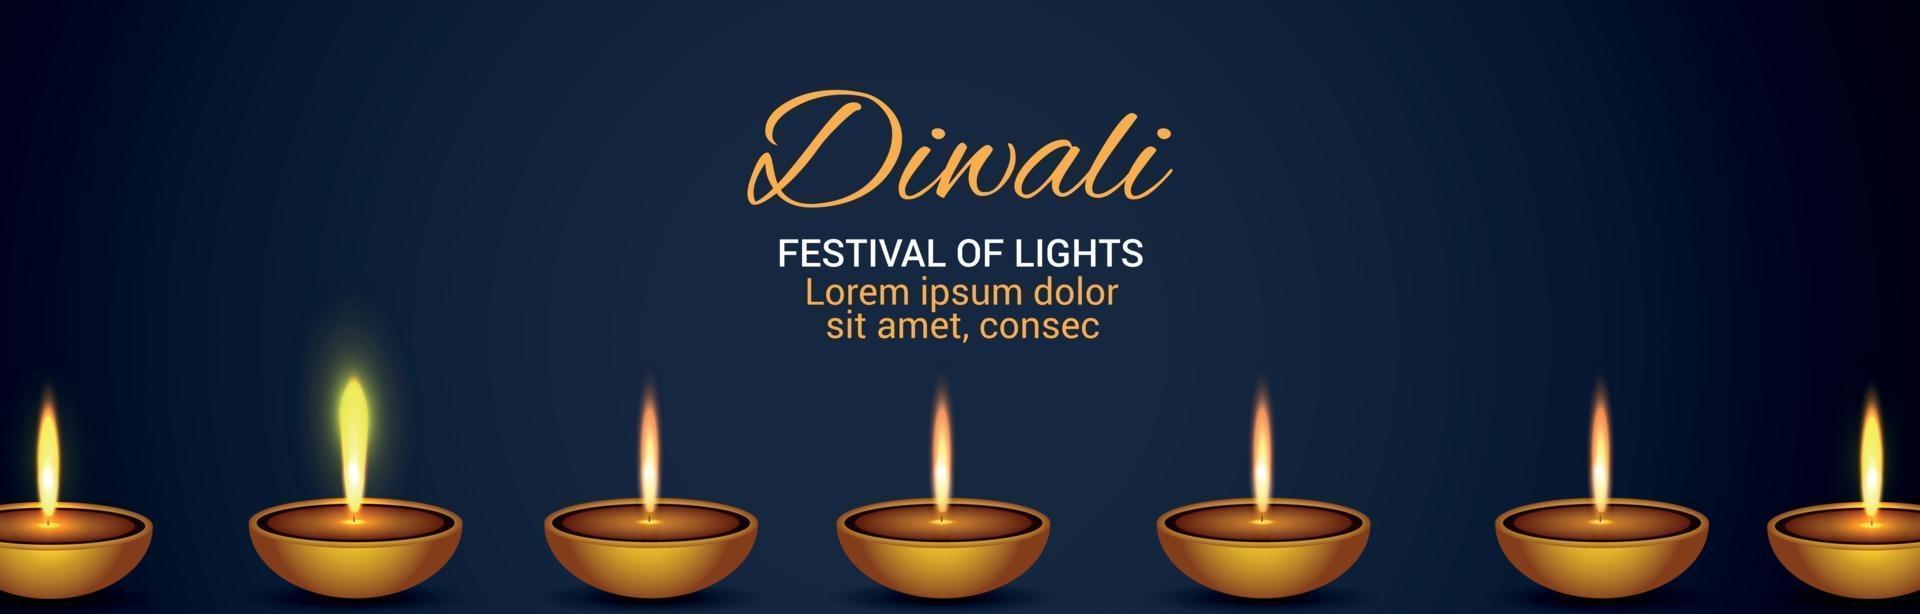 Festival de Diwali da Bandeira de Celebração da Luz com Diya vetor